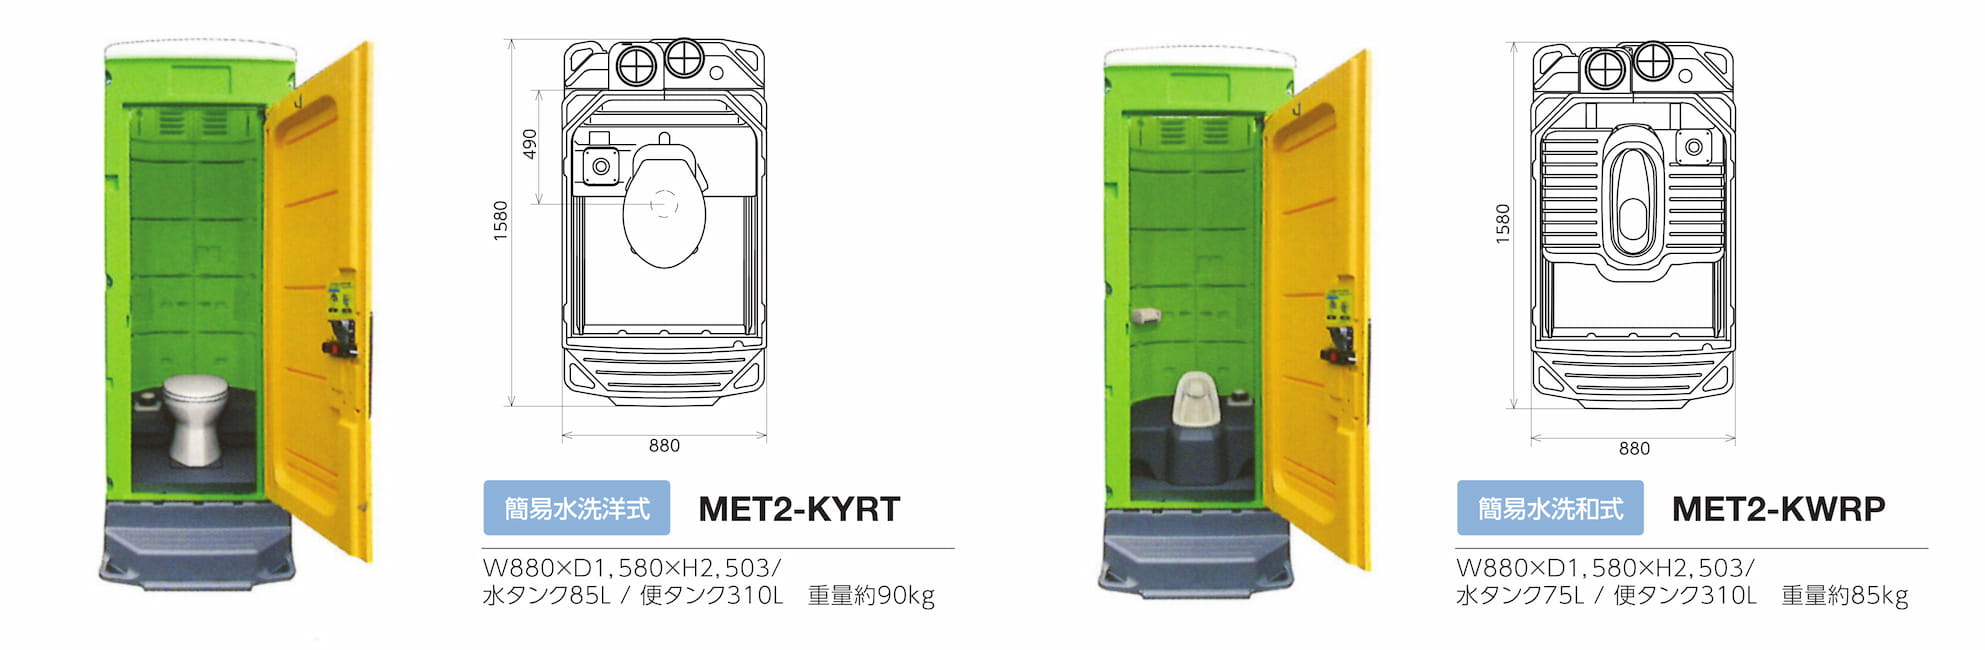 [MET2-SWLT] 仮設トイレ 簡易トイレ 仮設便所 エコットトイレM2 和式 水洗タイプ 架台付き - 3